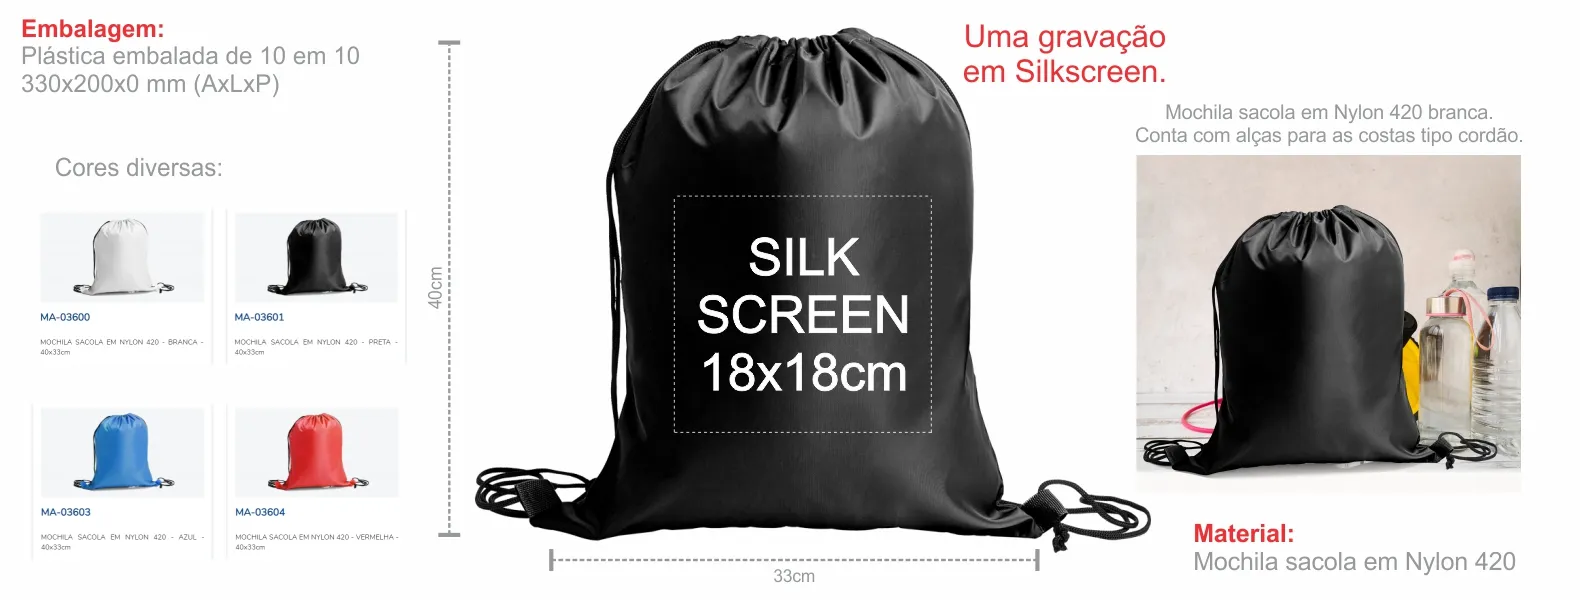 Mochila sacola em Nylon 420 preta. Conta com alças para as costas tipo cordão e cantos reforçados.